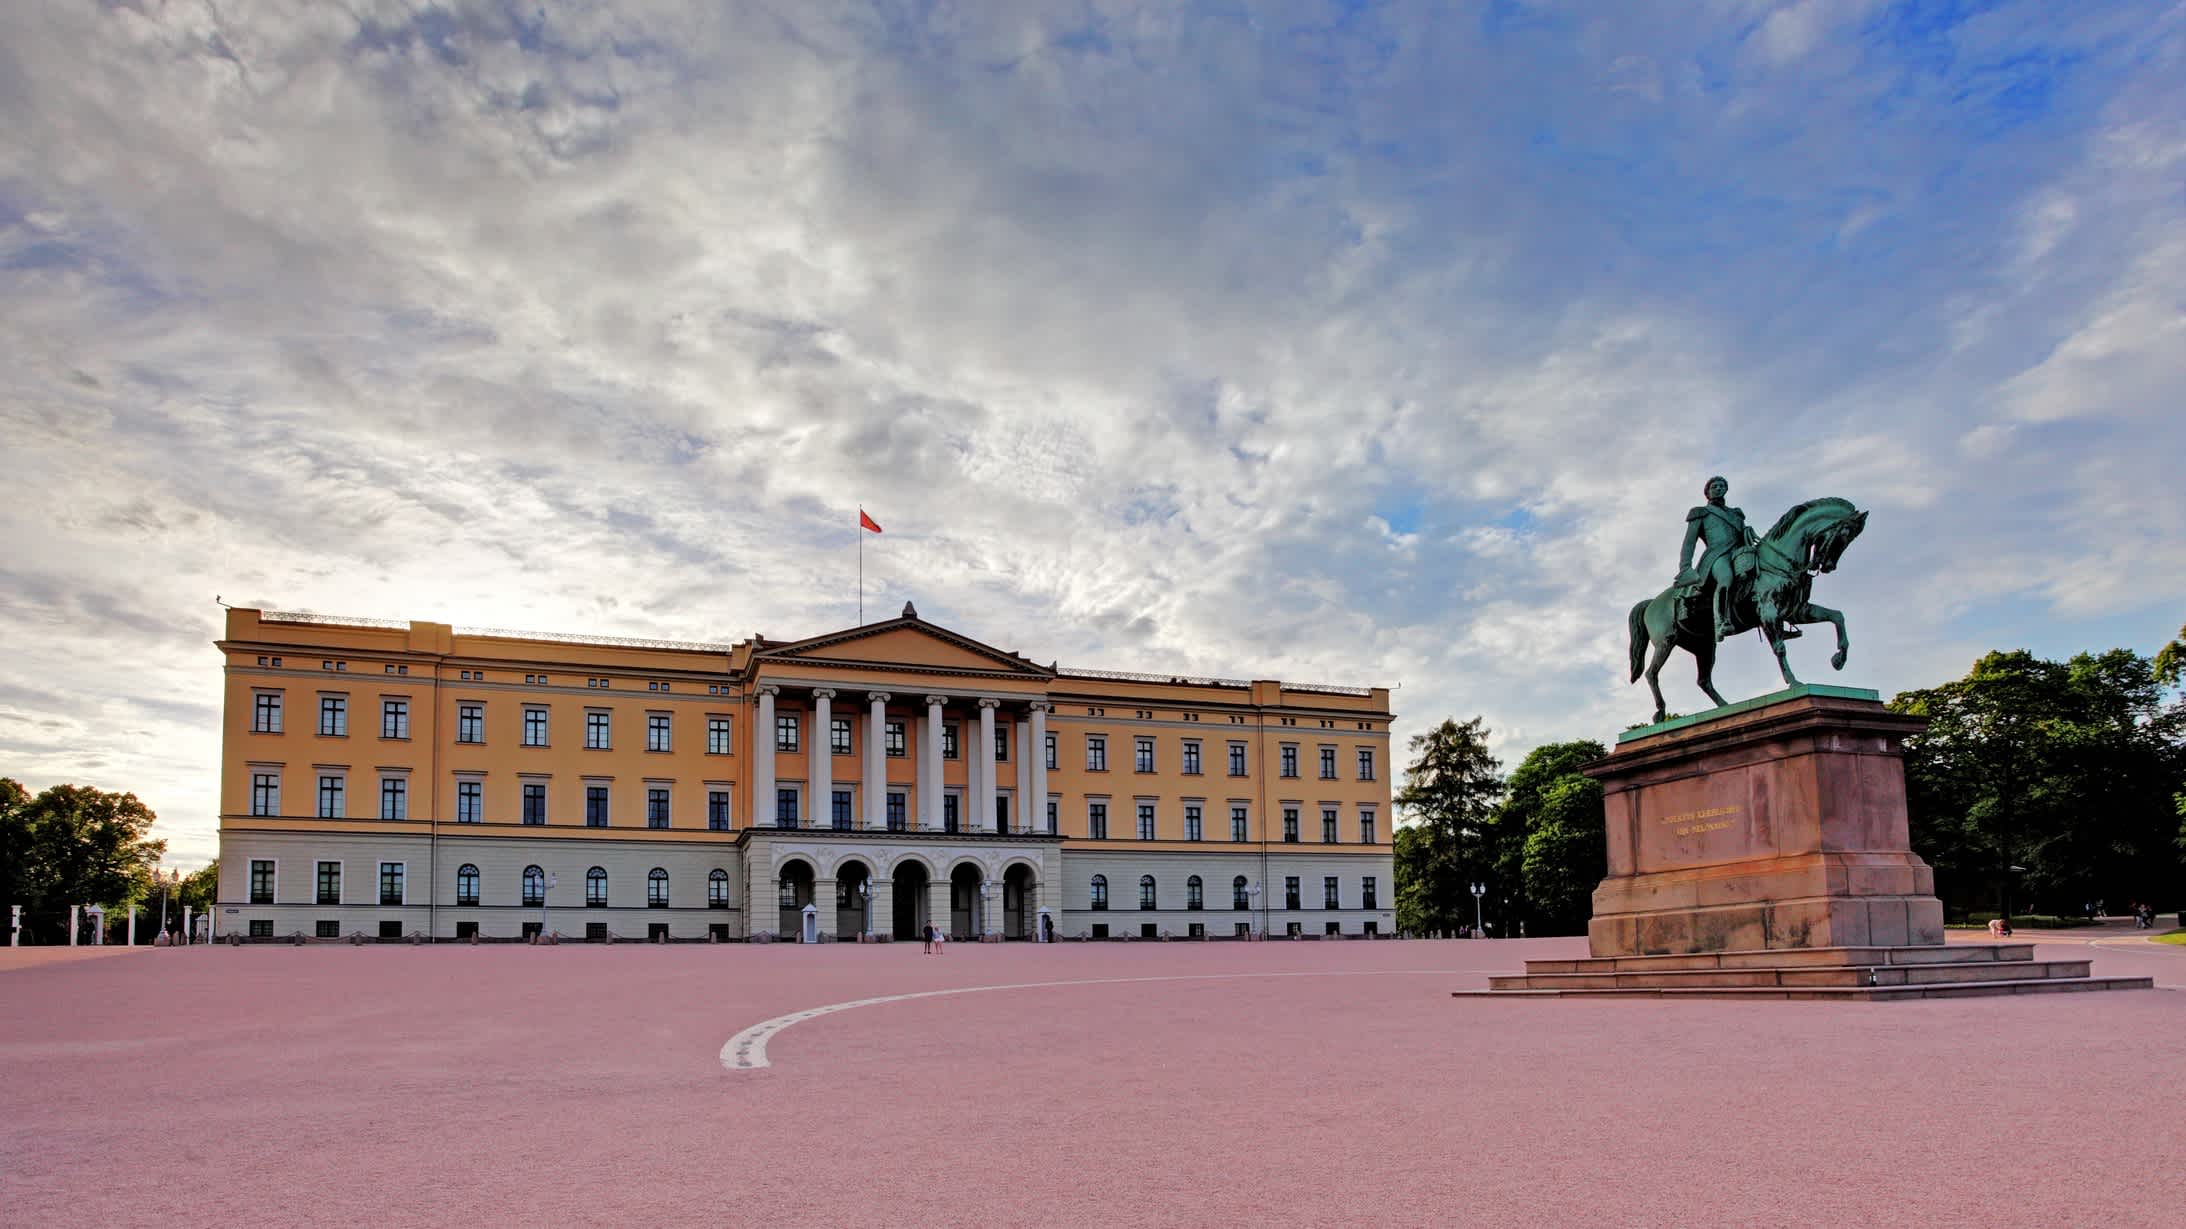 Blick auf den Königlicher Palast (Slottet) in Oslo, Norwegen.